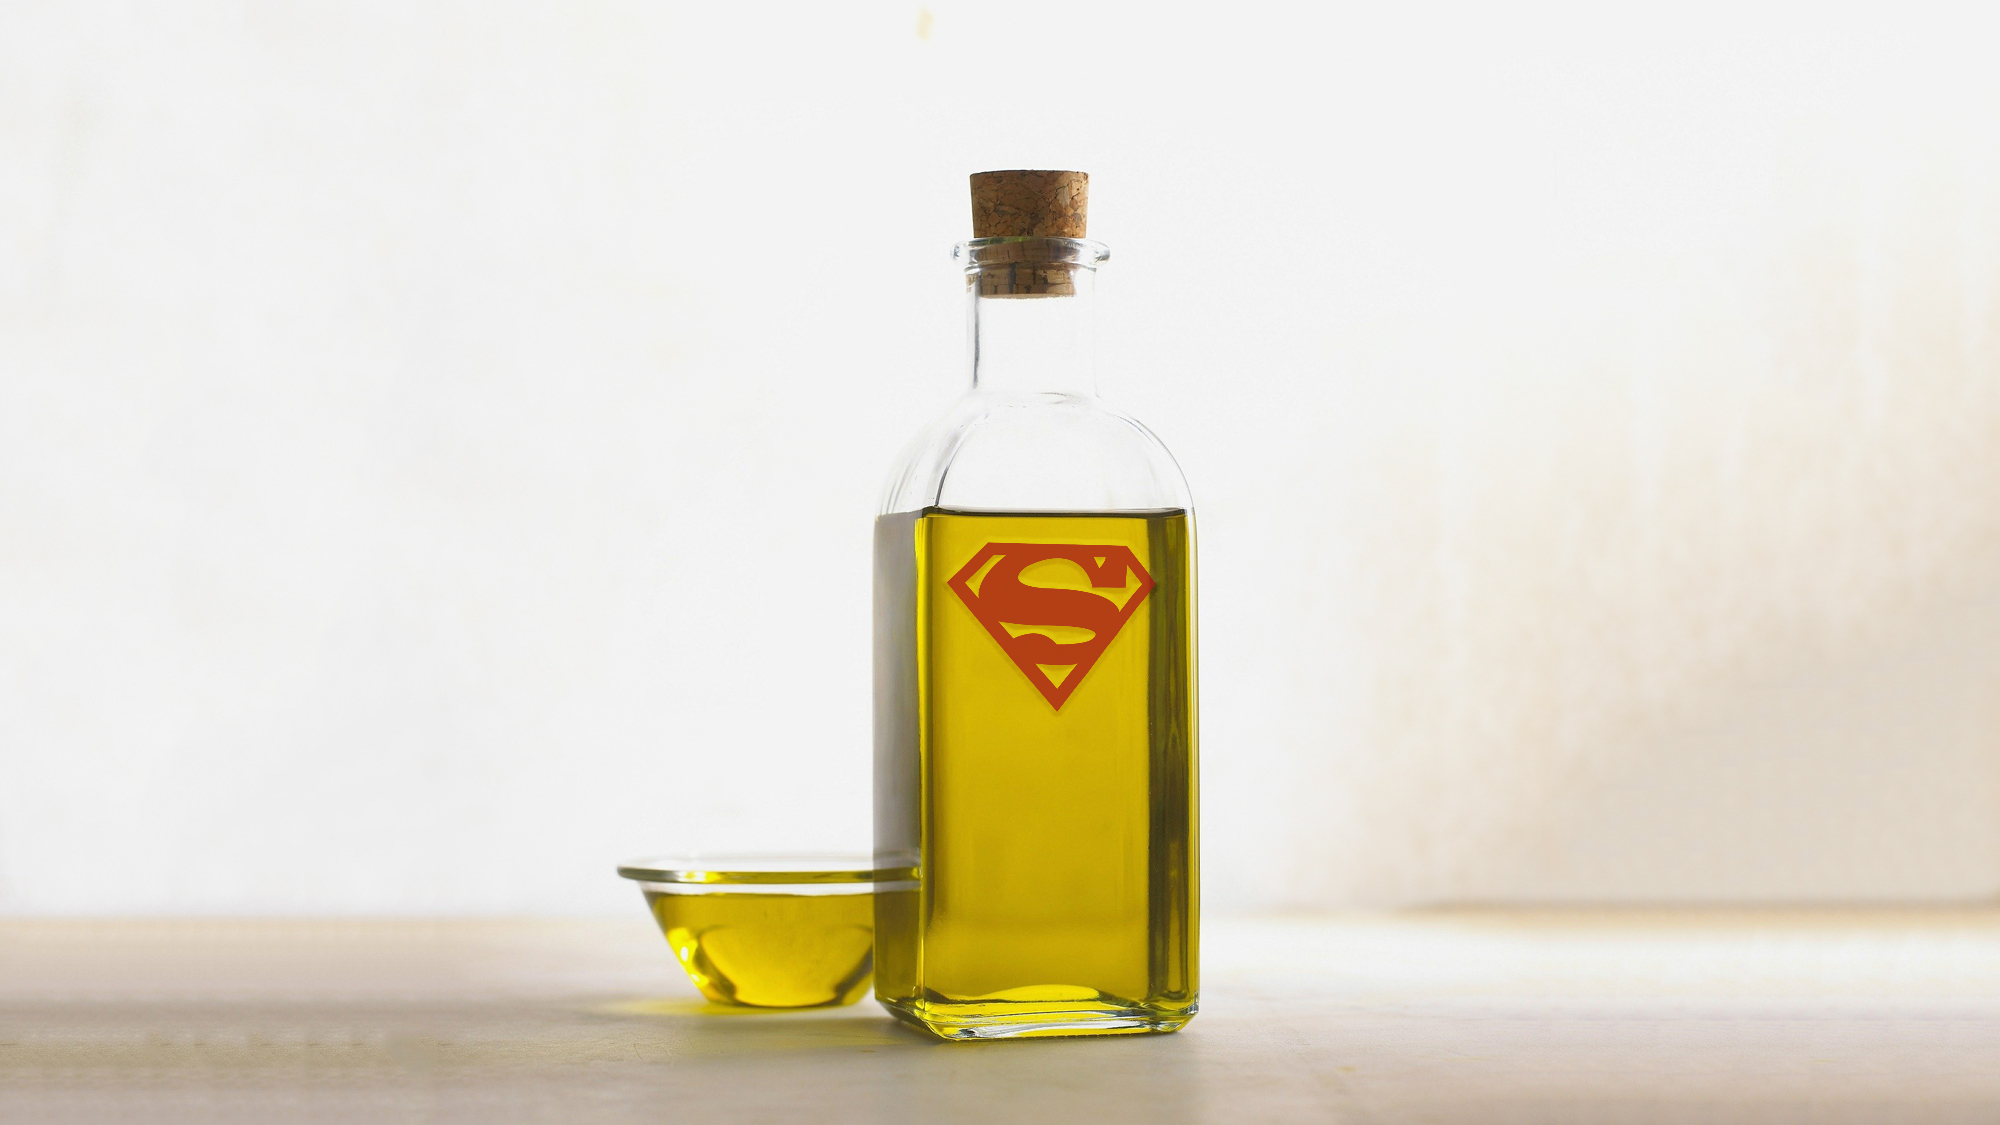 L'oli d'oliva pot ser enriquit per tal de millorar les seves qualitats cardioprotectores. Imatge original de Marge Nauer en Pixabay